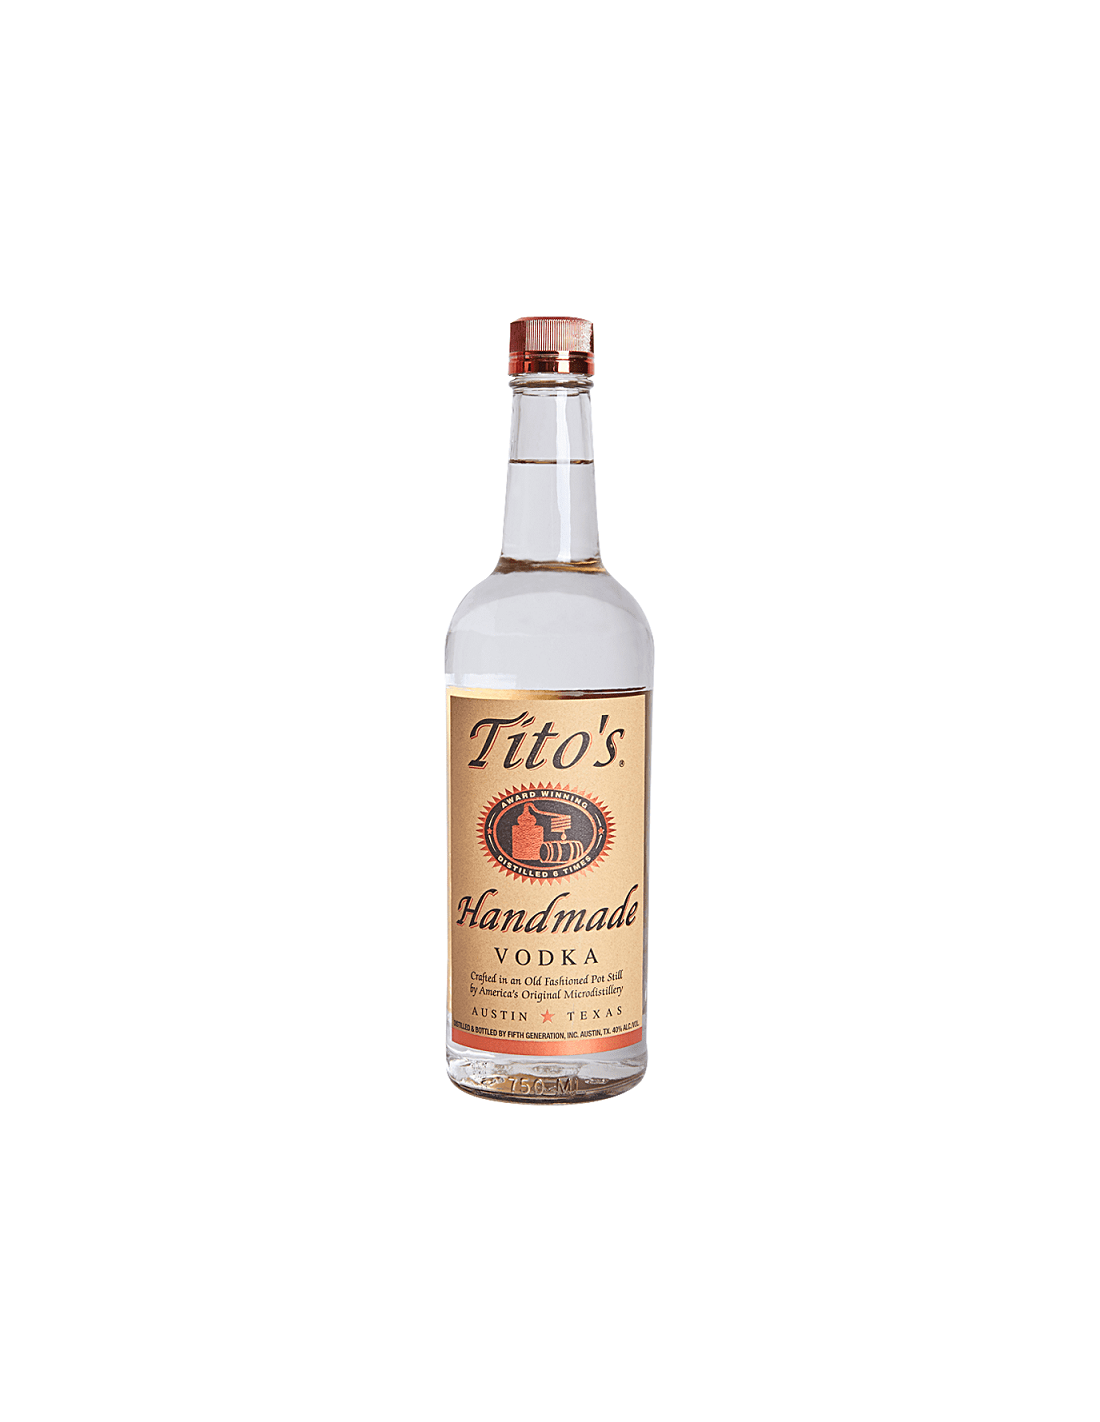 Vodca Tito’s Handmade 0.7L, 40% alc., America alcooldiscount.ro